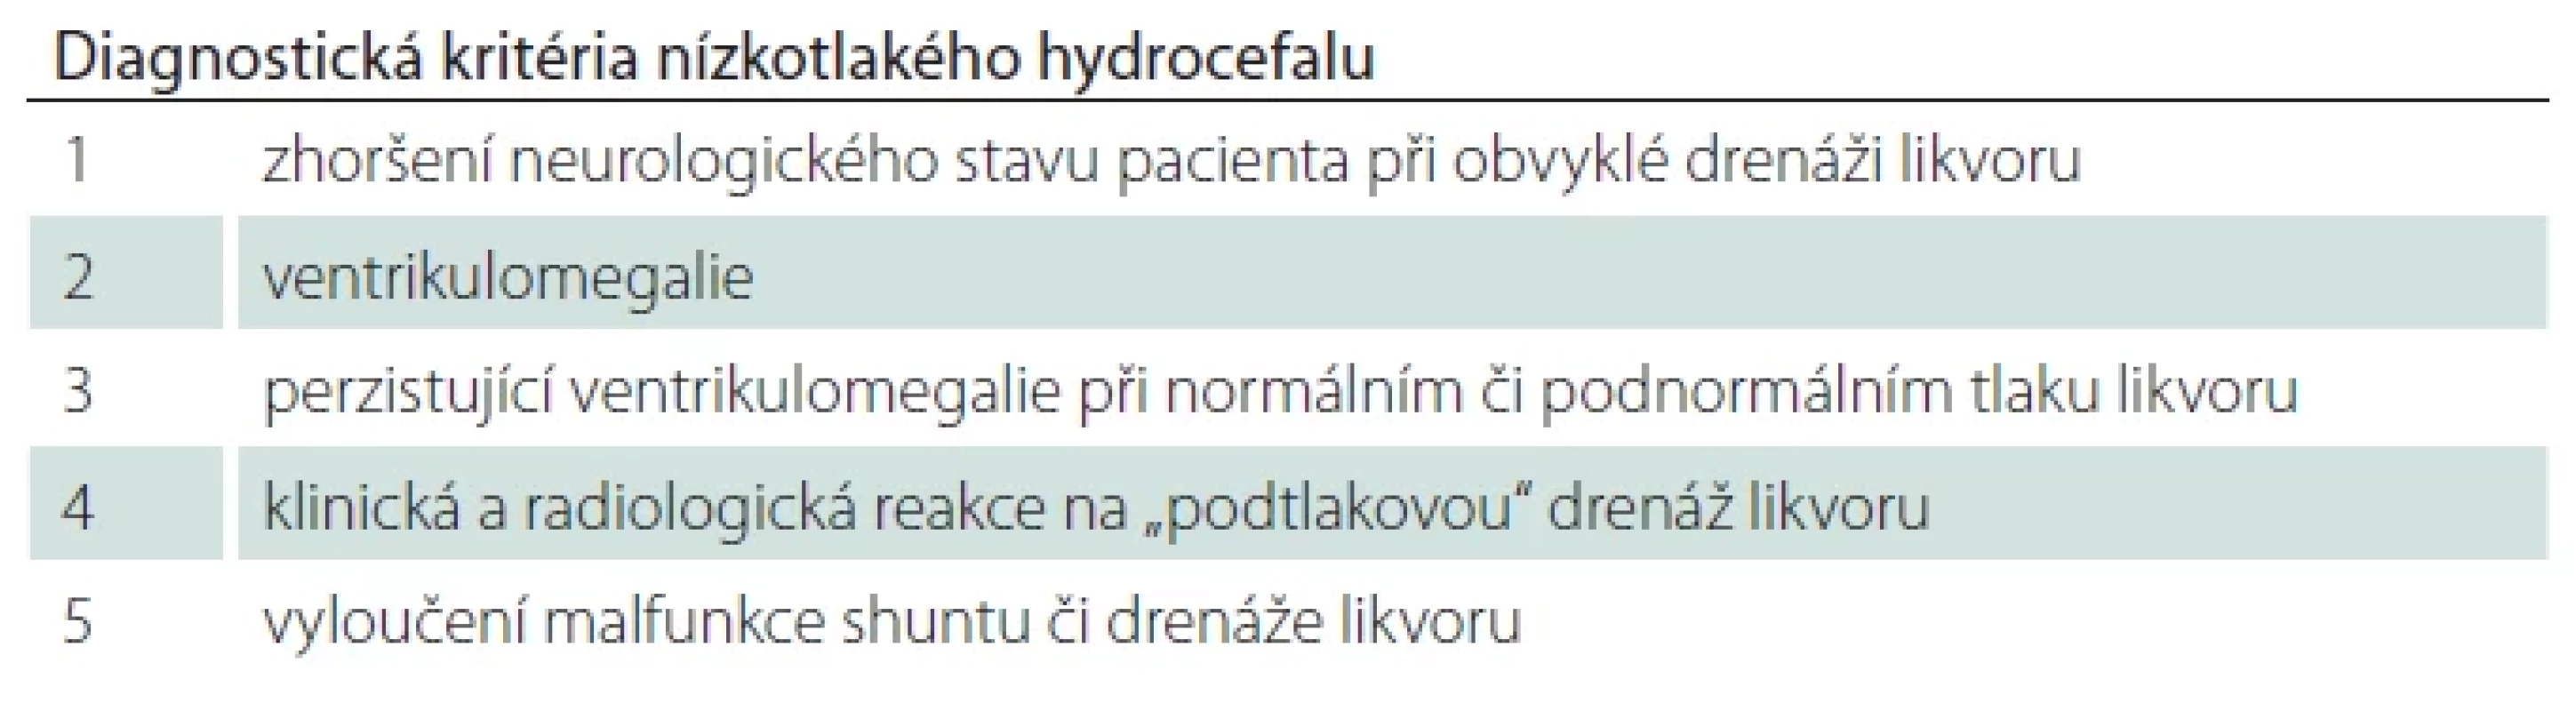 Diagnostická kritéria nízkotlakého hydrocefalu dle Panga a Altschulera [6].